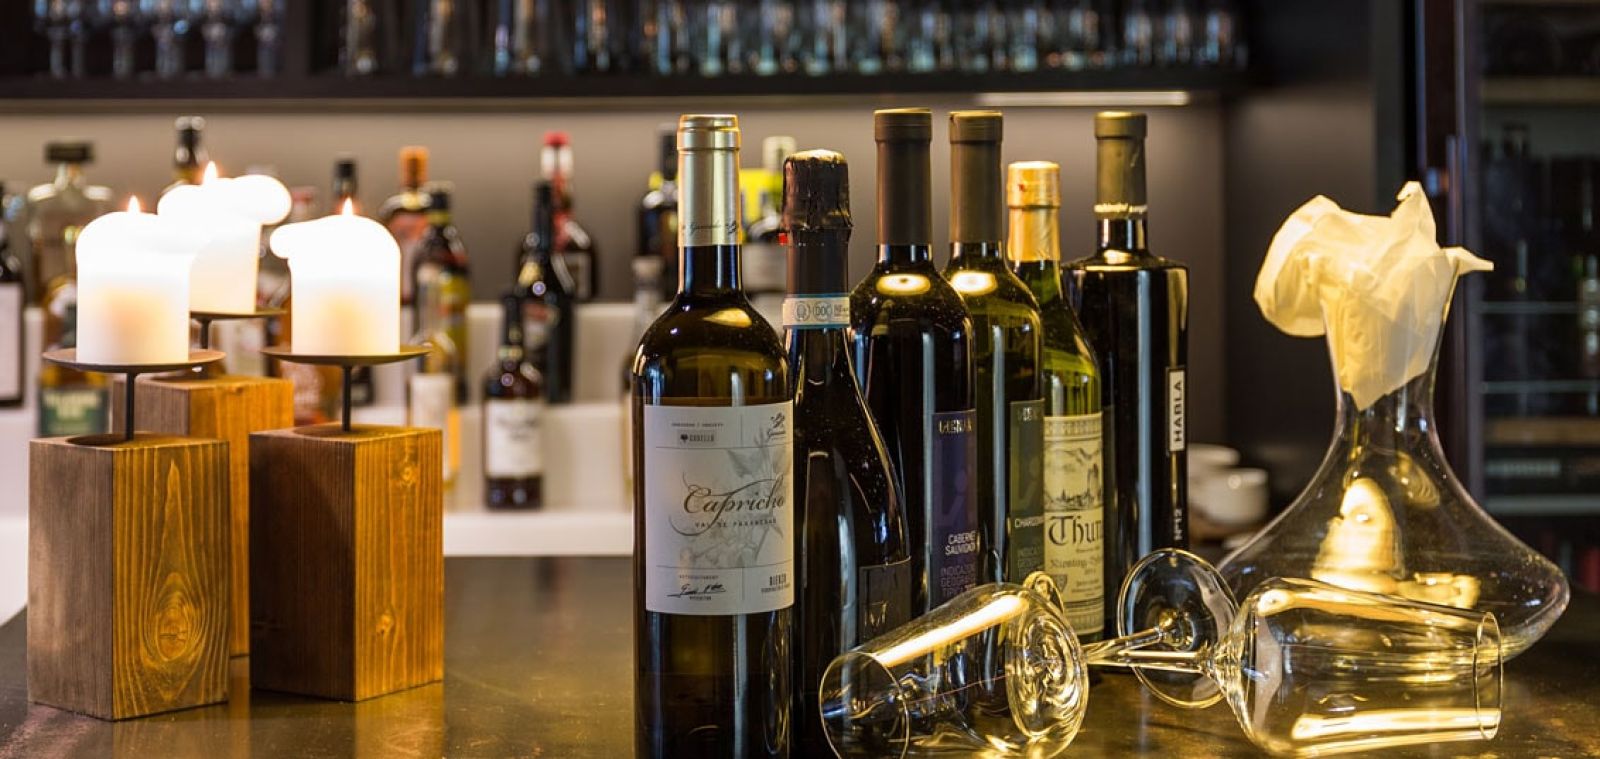 Enjoy a fine wine at the RIBS Bar in Thun